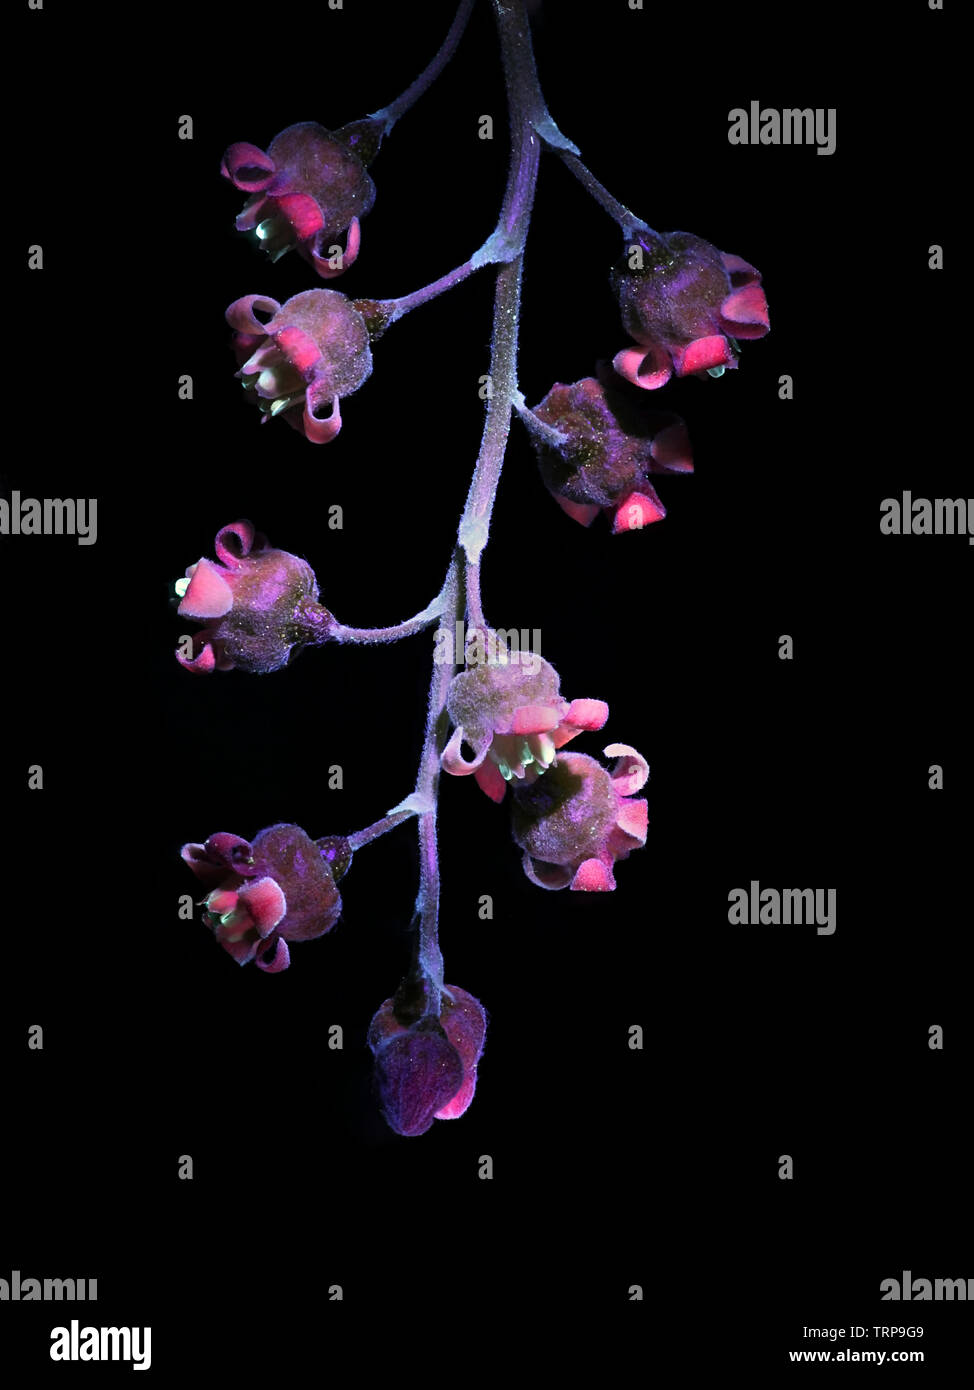 La fluorescence des fleurs groseille, Ribes rubrum, photographiée en lumière ultraviolette (365 nm) Banque D'Images